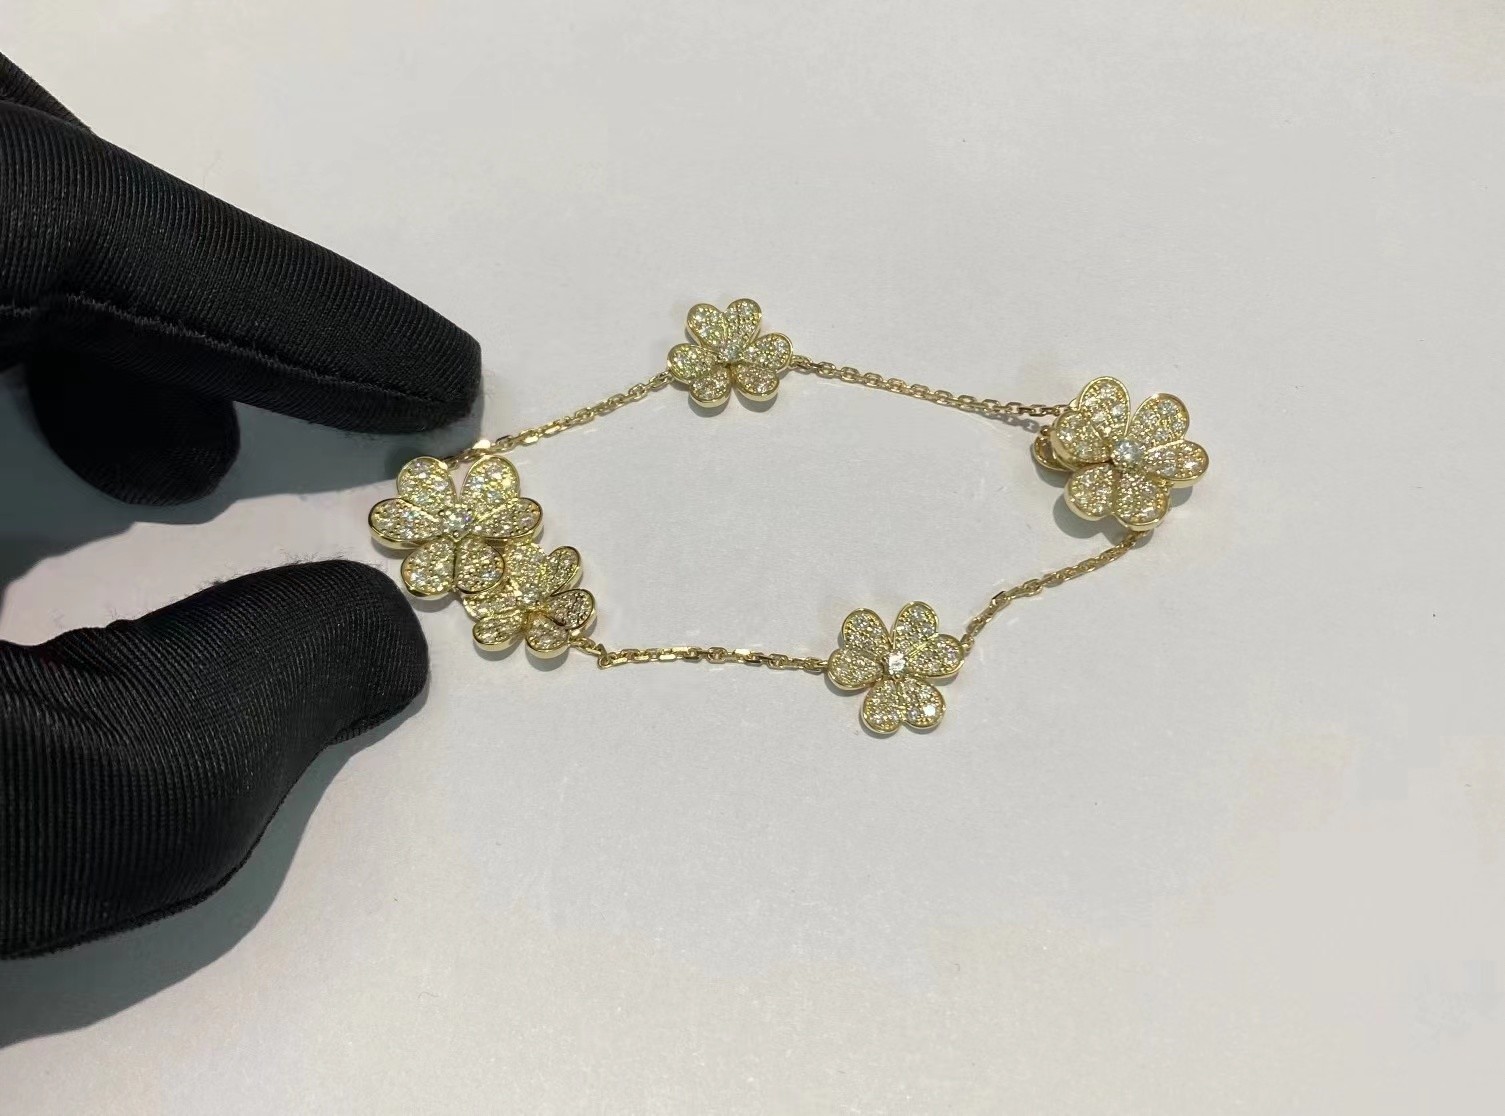 Cheap luxury gold jewelry Van Cleef &amp; Arpels Frivole Bracelet 5 Flowers 18K Gold Diamond jewelry suppliers for sale